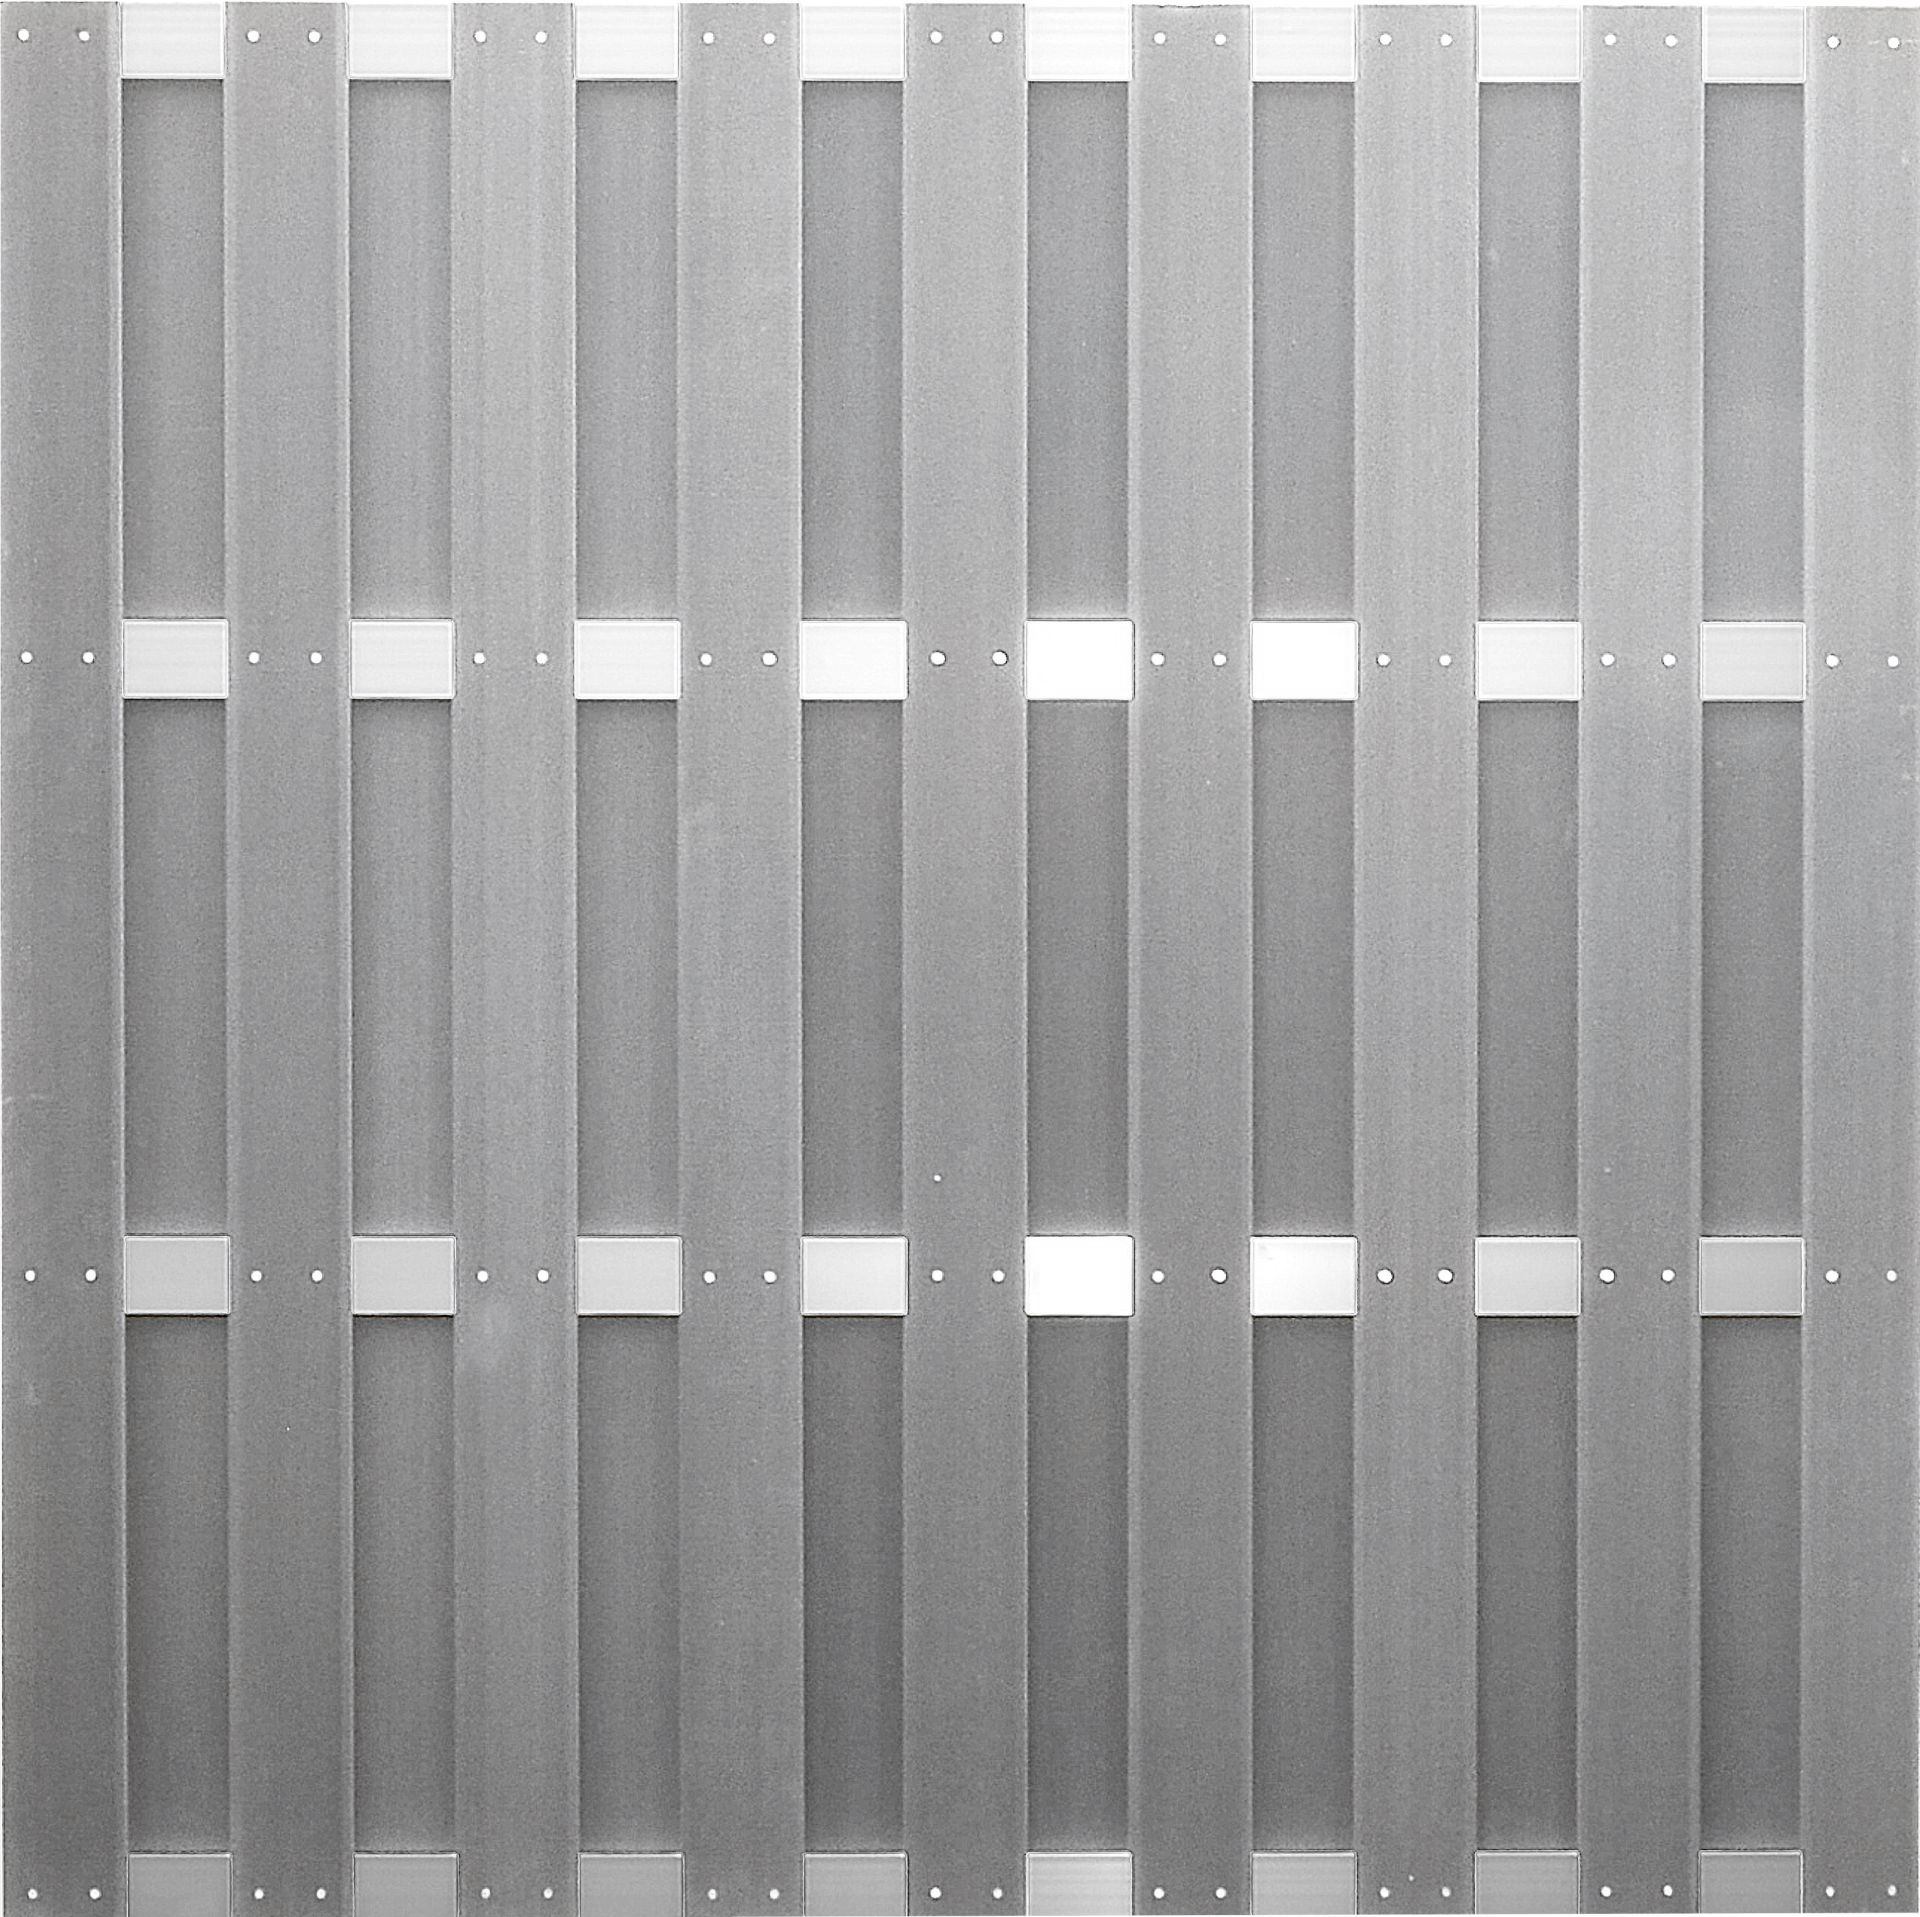 JINAN-Serie grau 180 x 180 cm WPC-Bretterzaun1